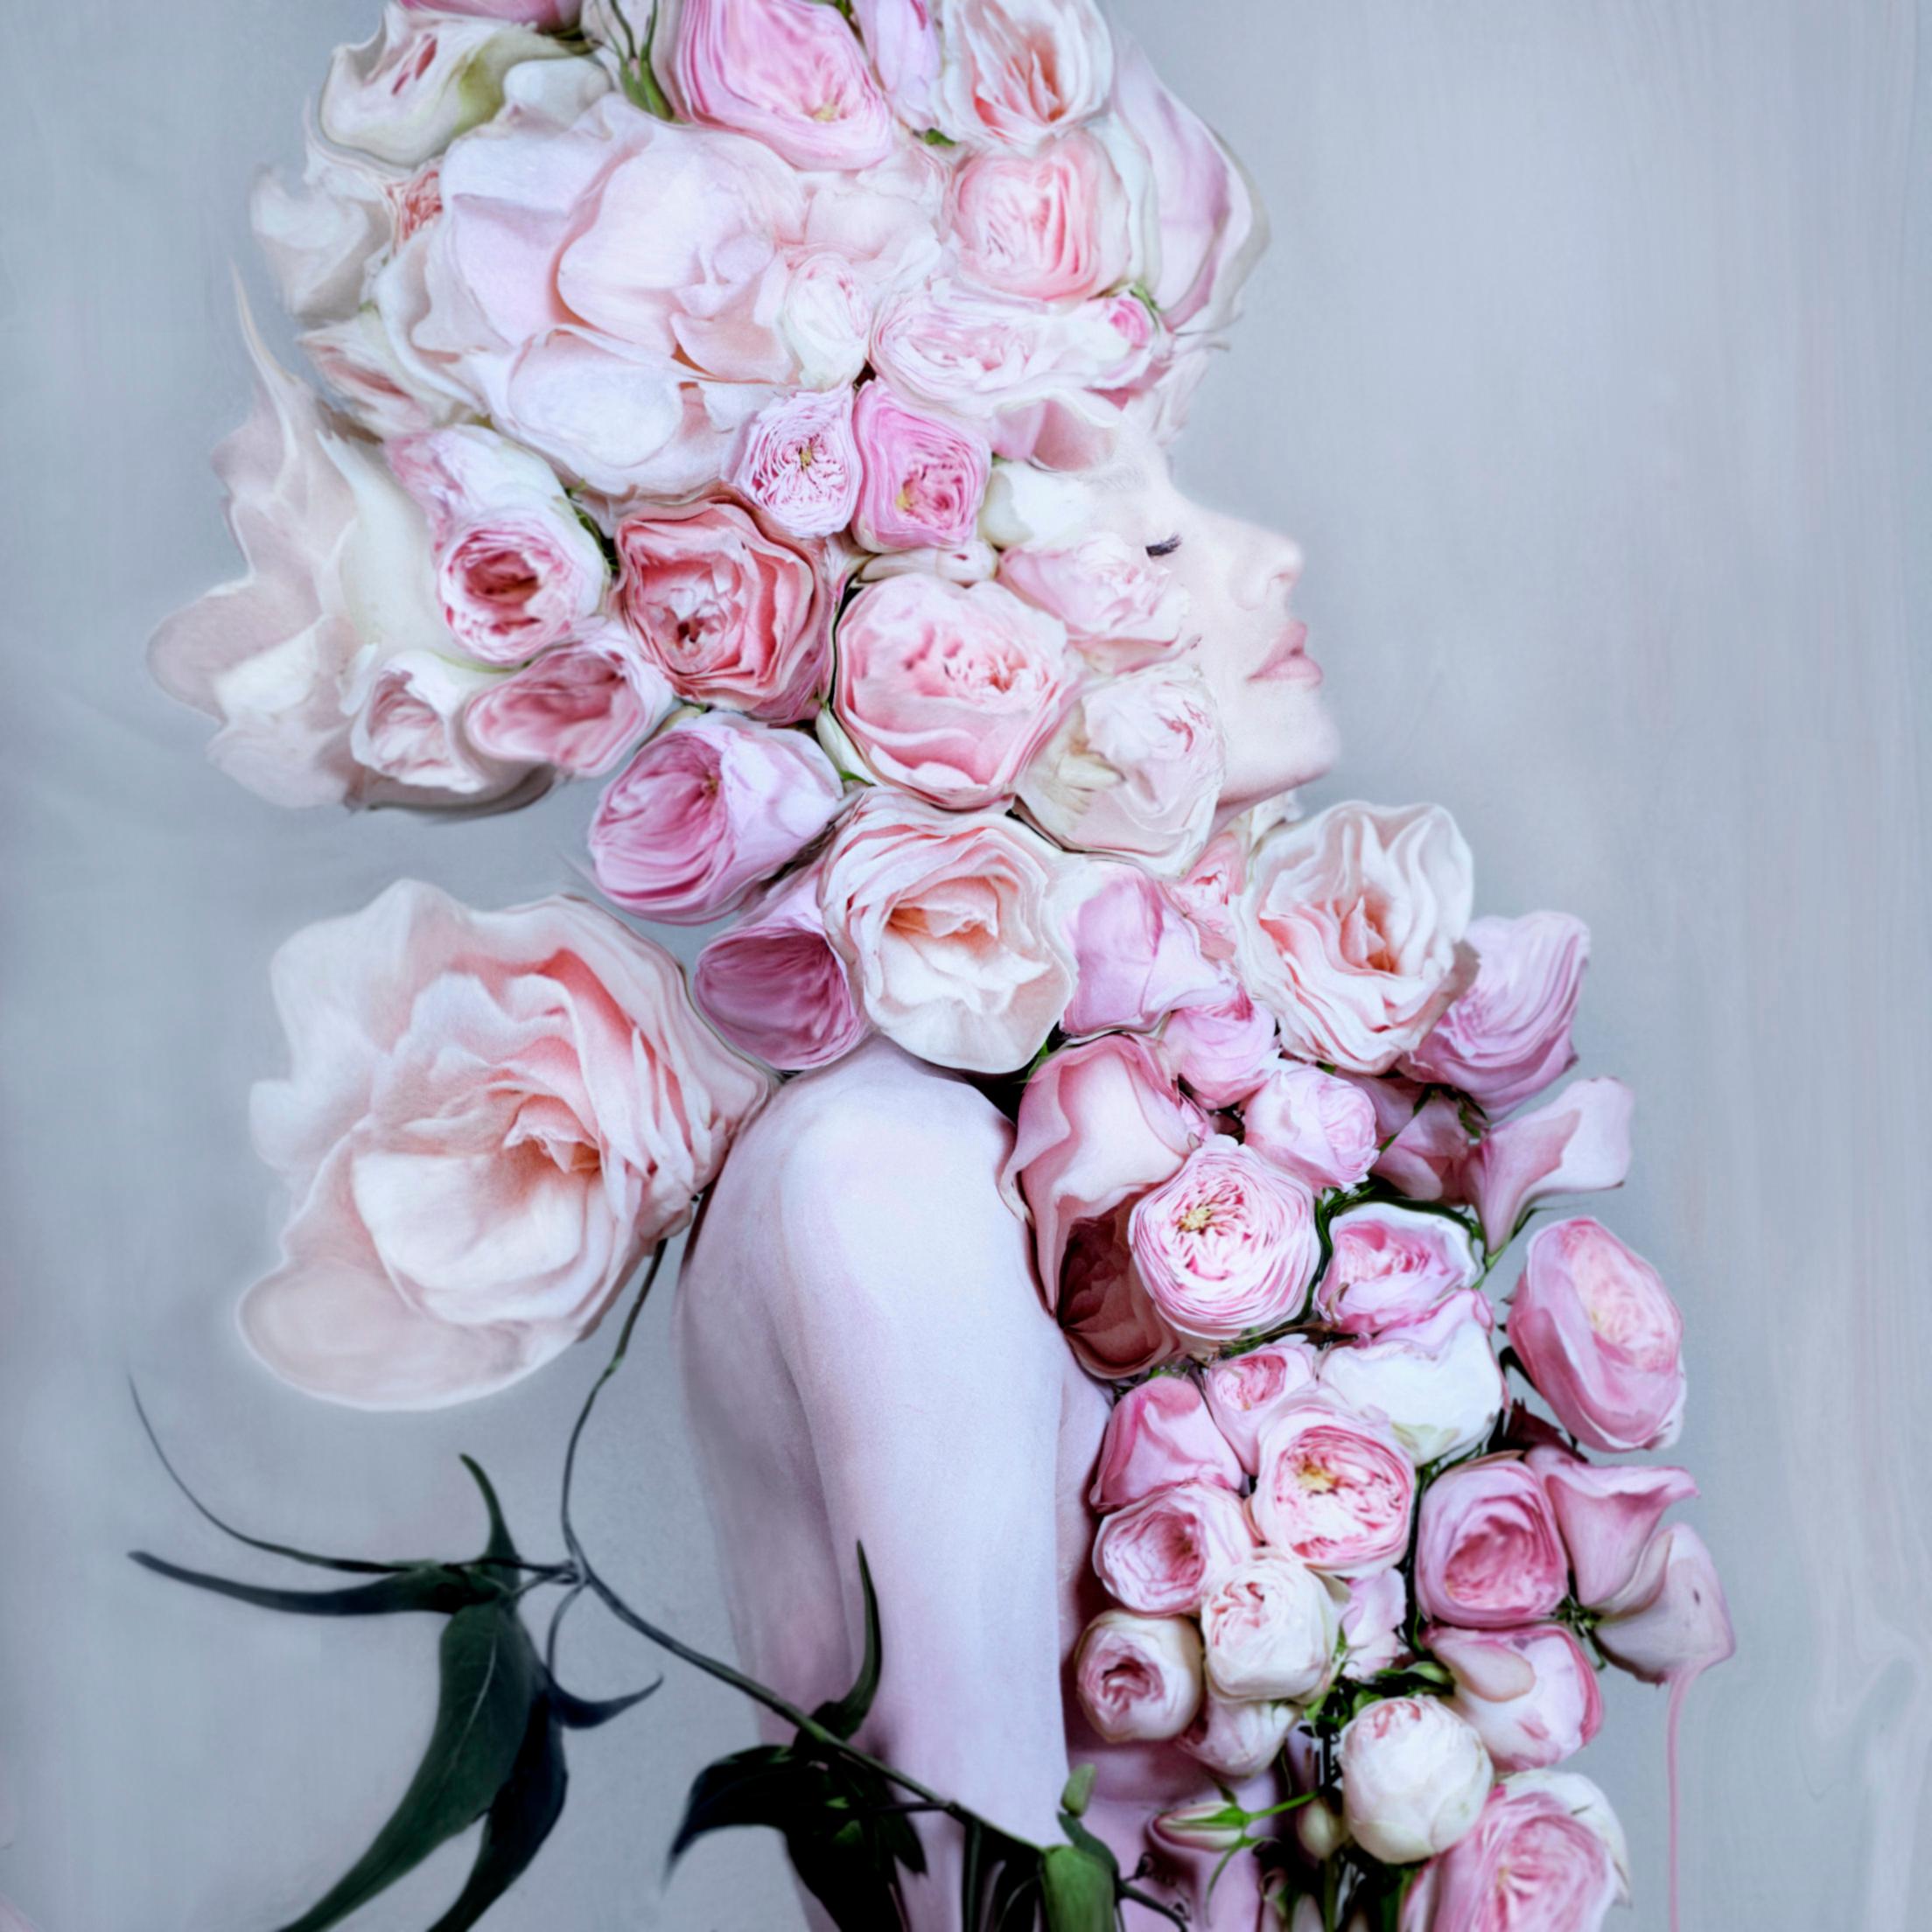 Aufsteigende Liebe
C-Print auf Fuji-Papier
Collection'S: FLOWER LOVE
Einheitsgröße: 40,5 x 40,5
Auflage von 8 Stück + 2 Probedrucke

BLUMENLIEBE
Rosen erwärmen das Herz, sie inspirieren uns, uns selbst und andere zu pflegen und zu versorgen. Die